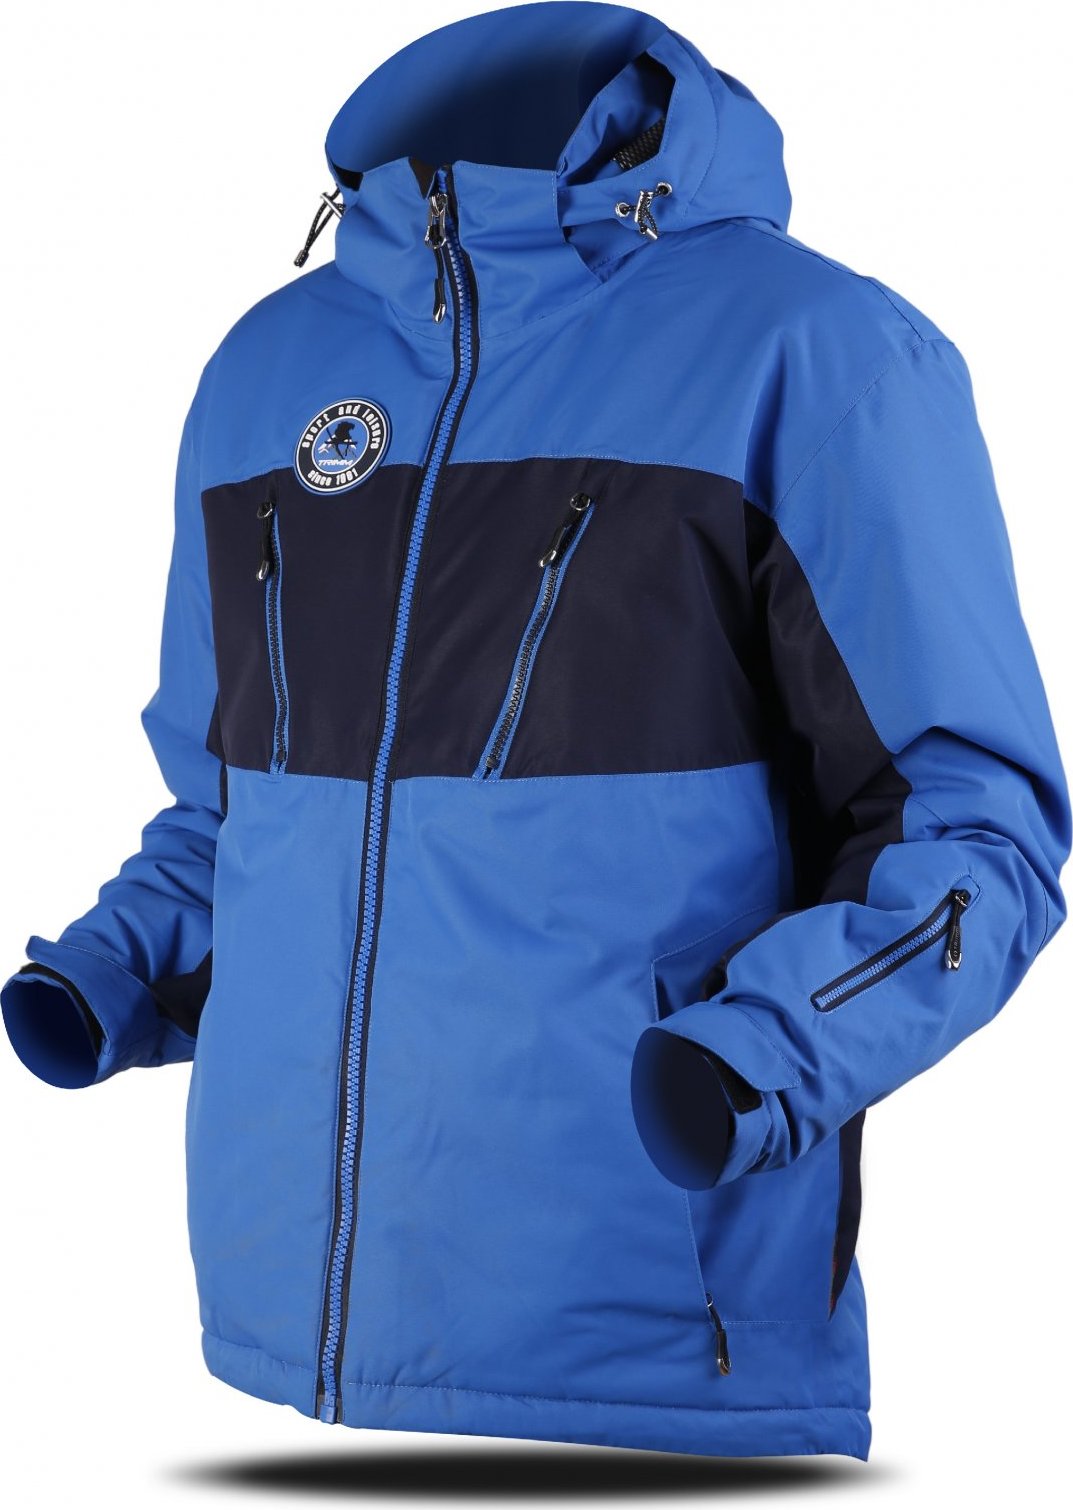 Pánská lyžařská bunda TRIMM Dynamit modrá Velikost: XXL, Barva: jeans blue/ navy